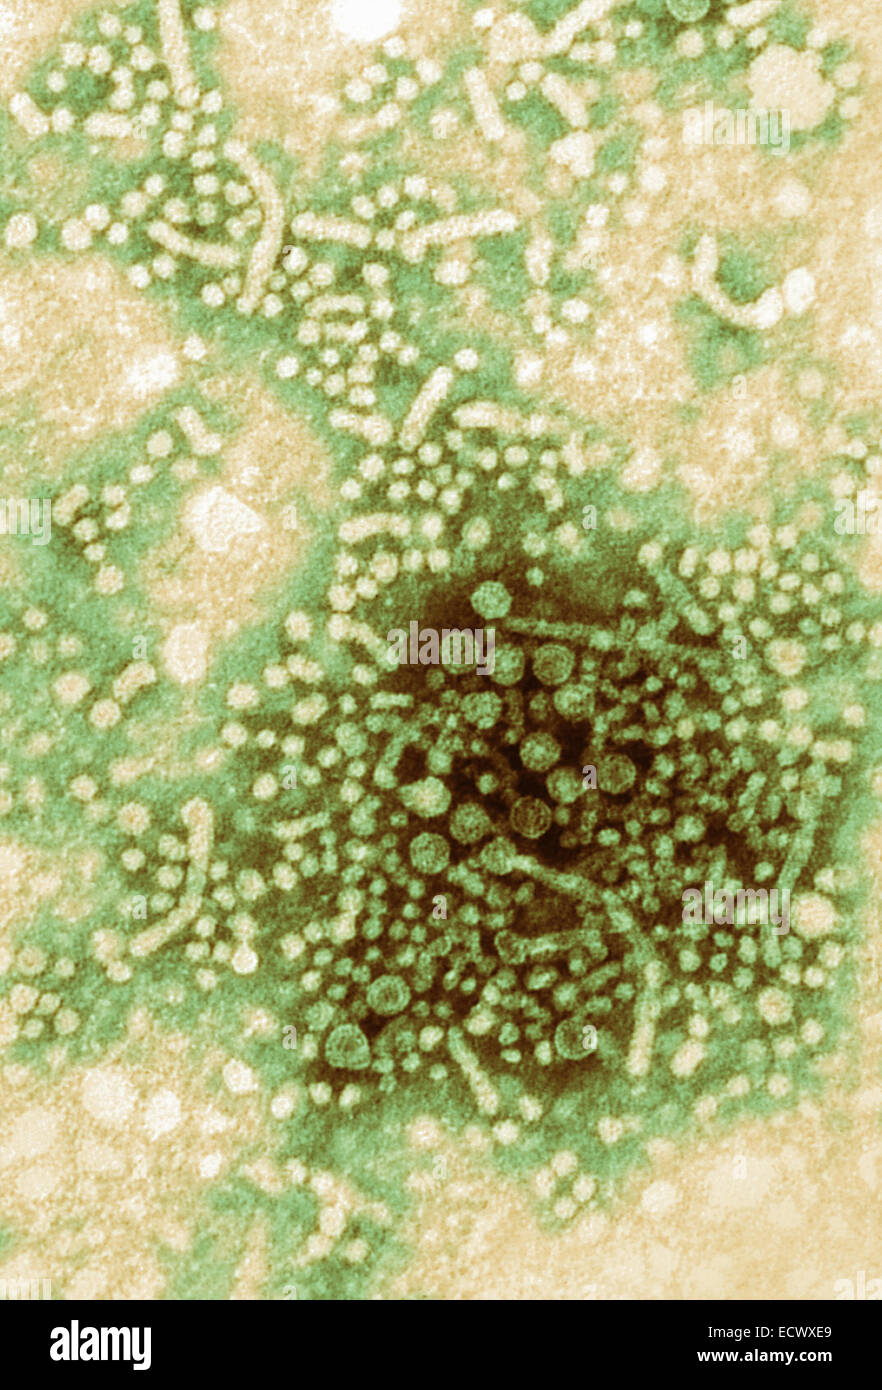 Microscopio elettronico a trasmissione del virus di epatite B. Foto Stock